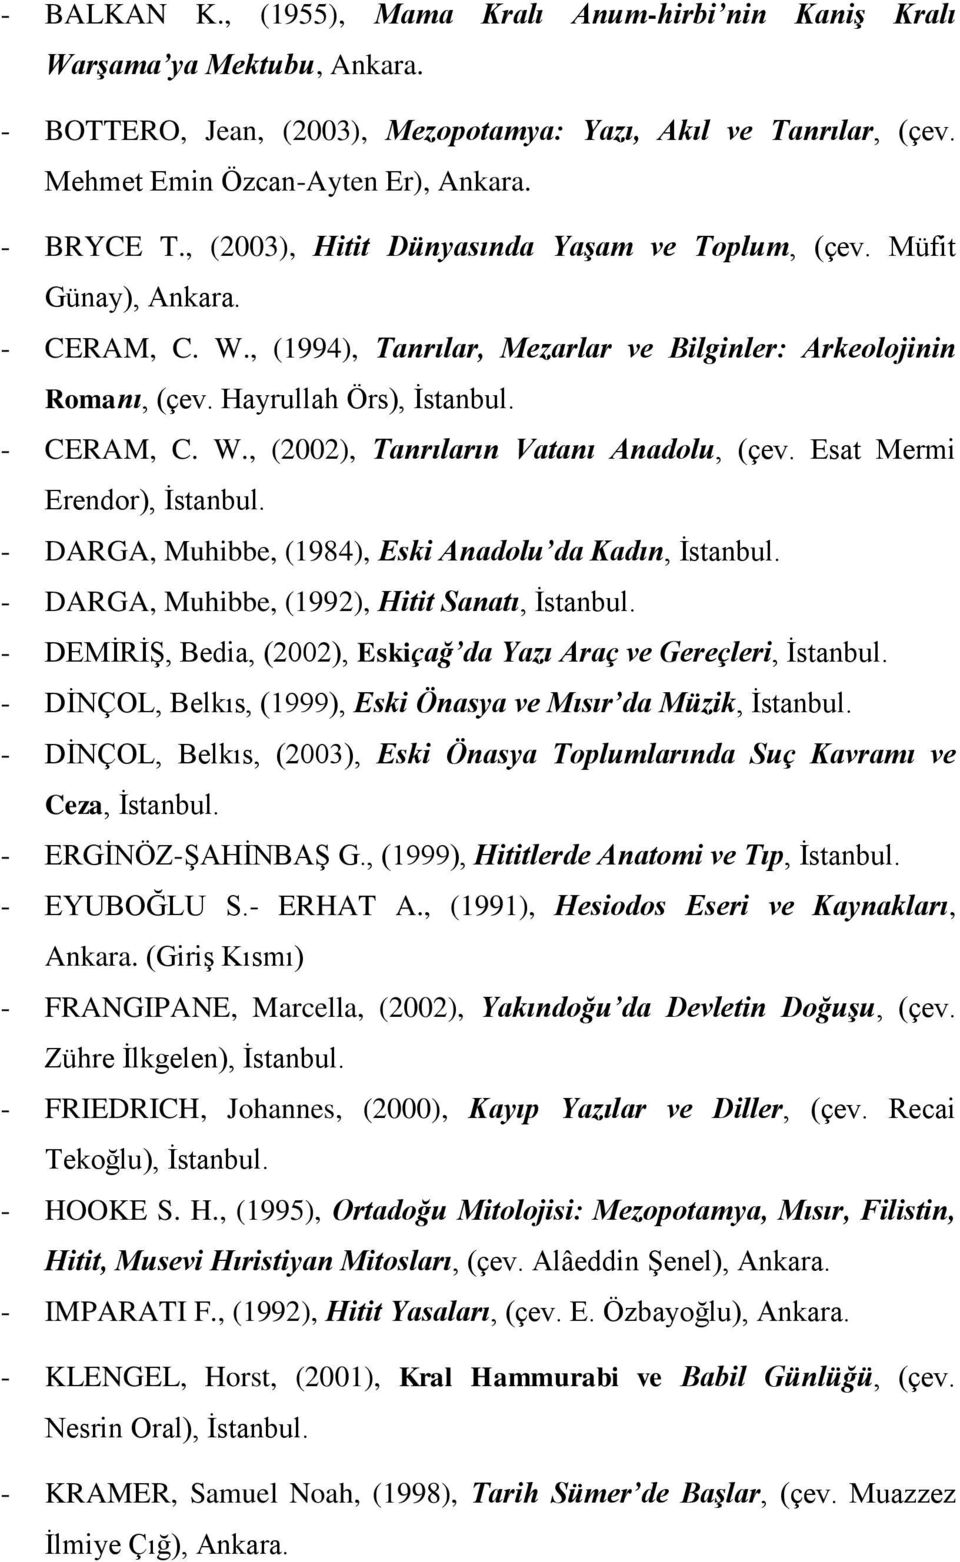 Esat Mermi Erendor), - DARGA, Muhibbe, (1984), Eski Anadolu da Kadın, - DARGA, Muhibbe, (1992), Hitit Sanatı, - DEMİRİŞ, Bedia, (2002), Eskiçağ da Yazı Araç ve Gereçleri, - DİNÇOL, Belkıs, (1999),